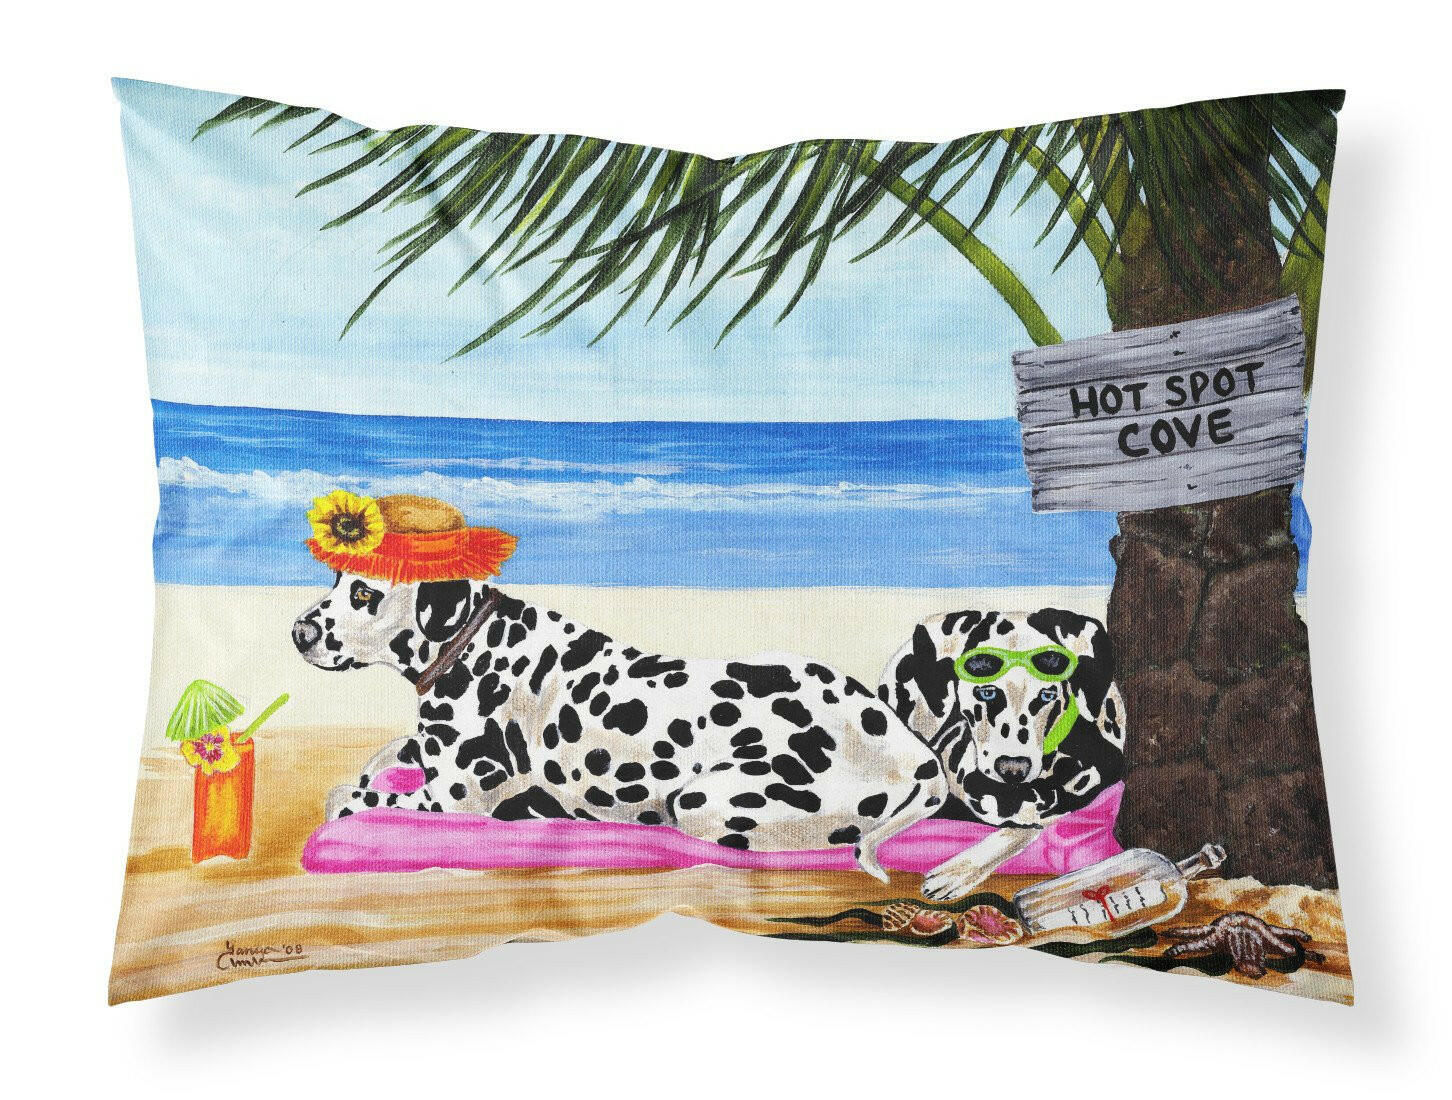 Hot Spot Cove Beach Dalmatian Fabric Standard Pillowcase AMB1342PILLOWCASE by Caroline's Treasures